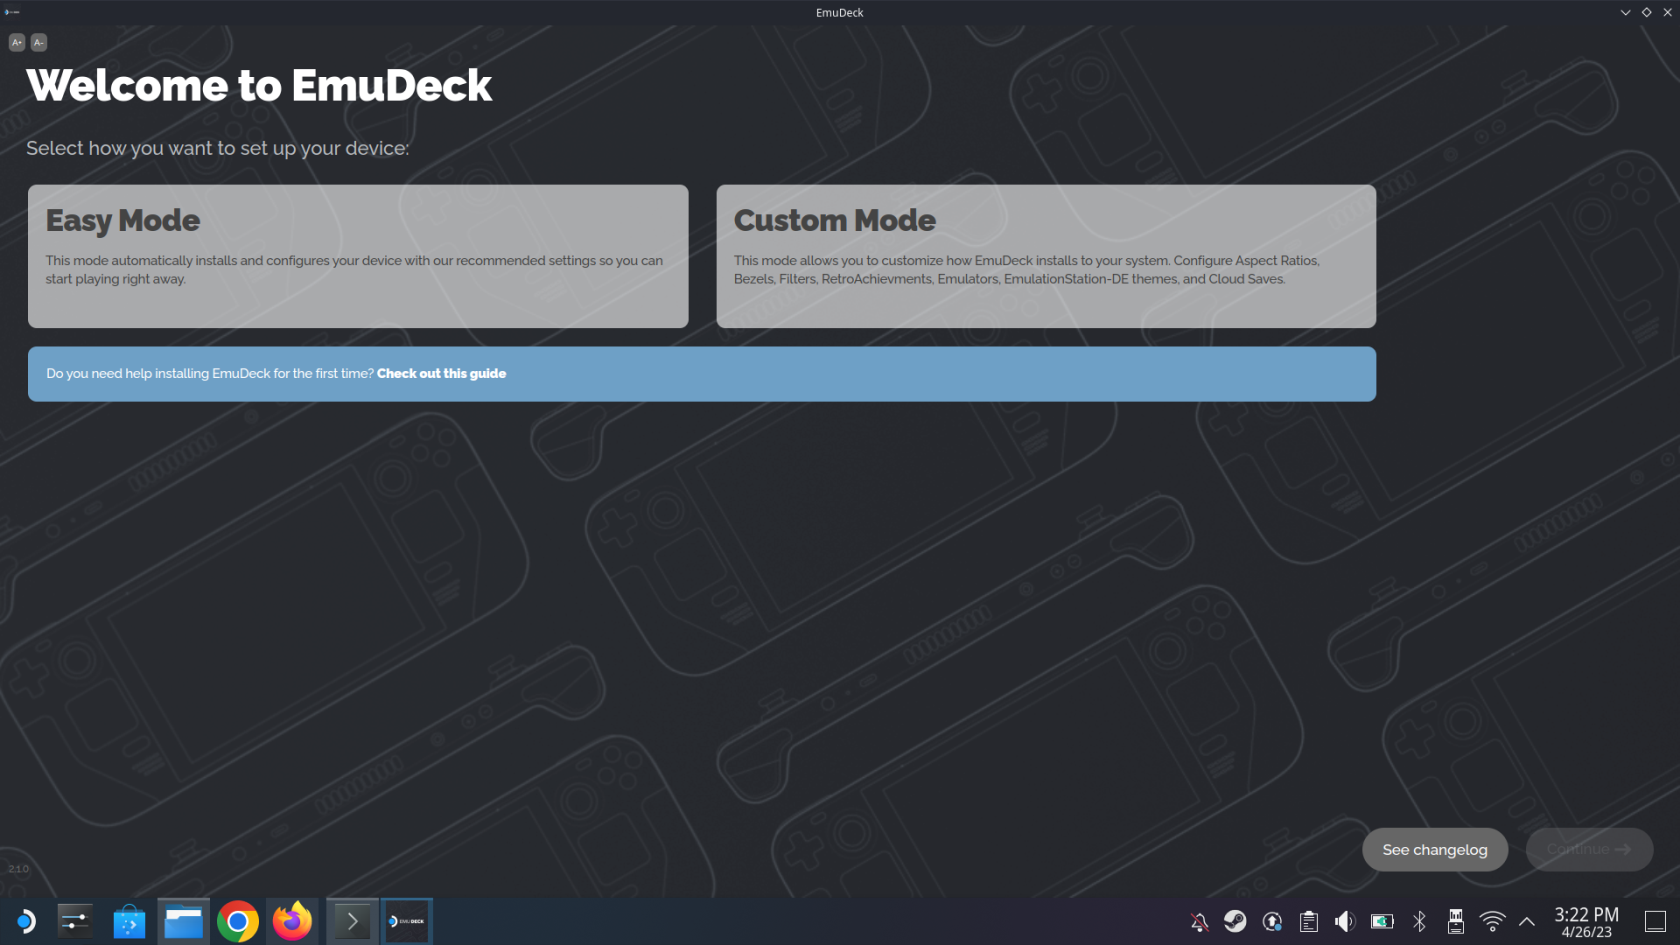 EmuDeck: Steam Deck emulációs útmutató